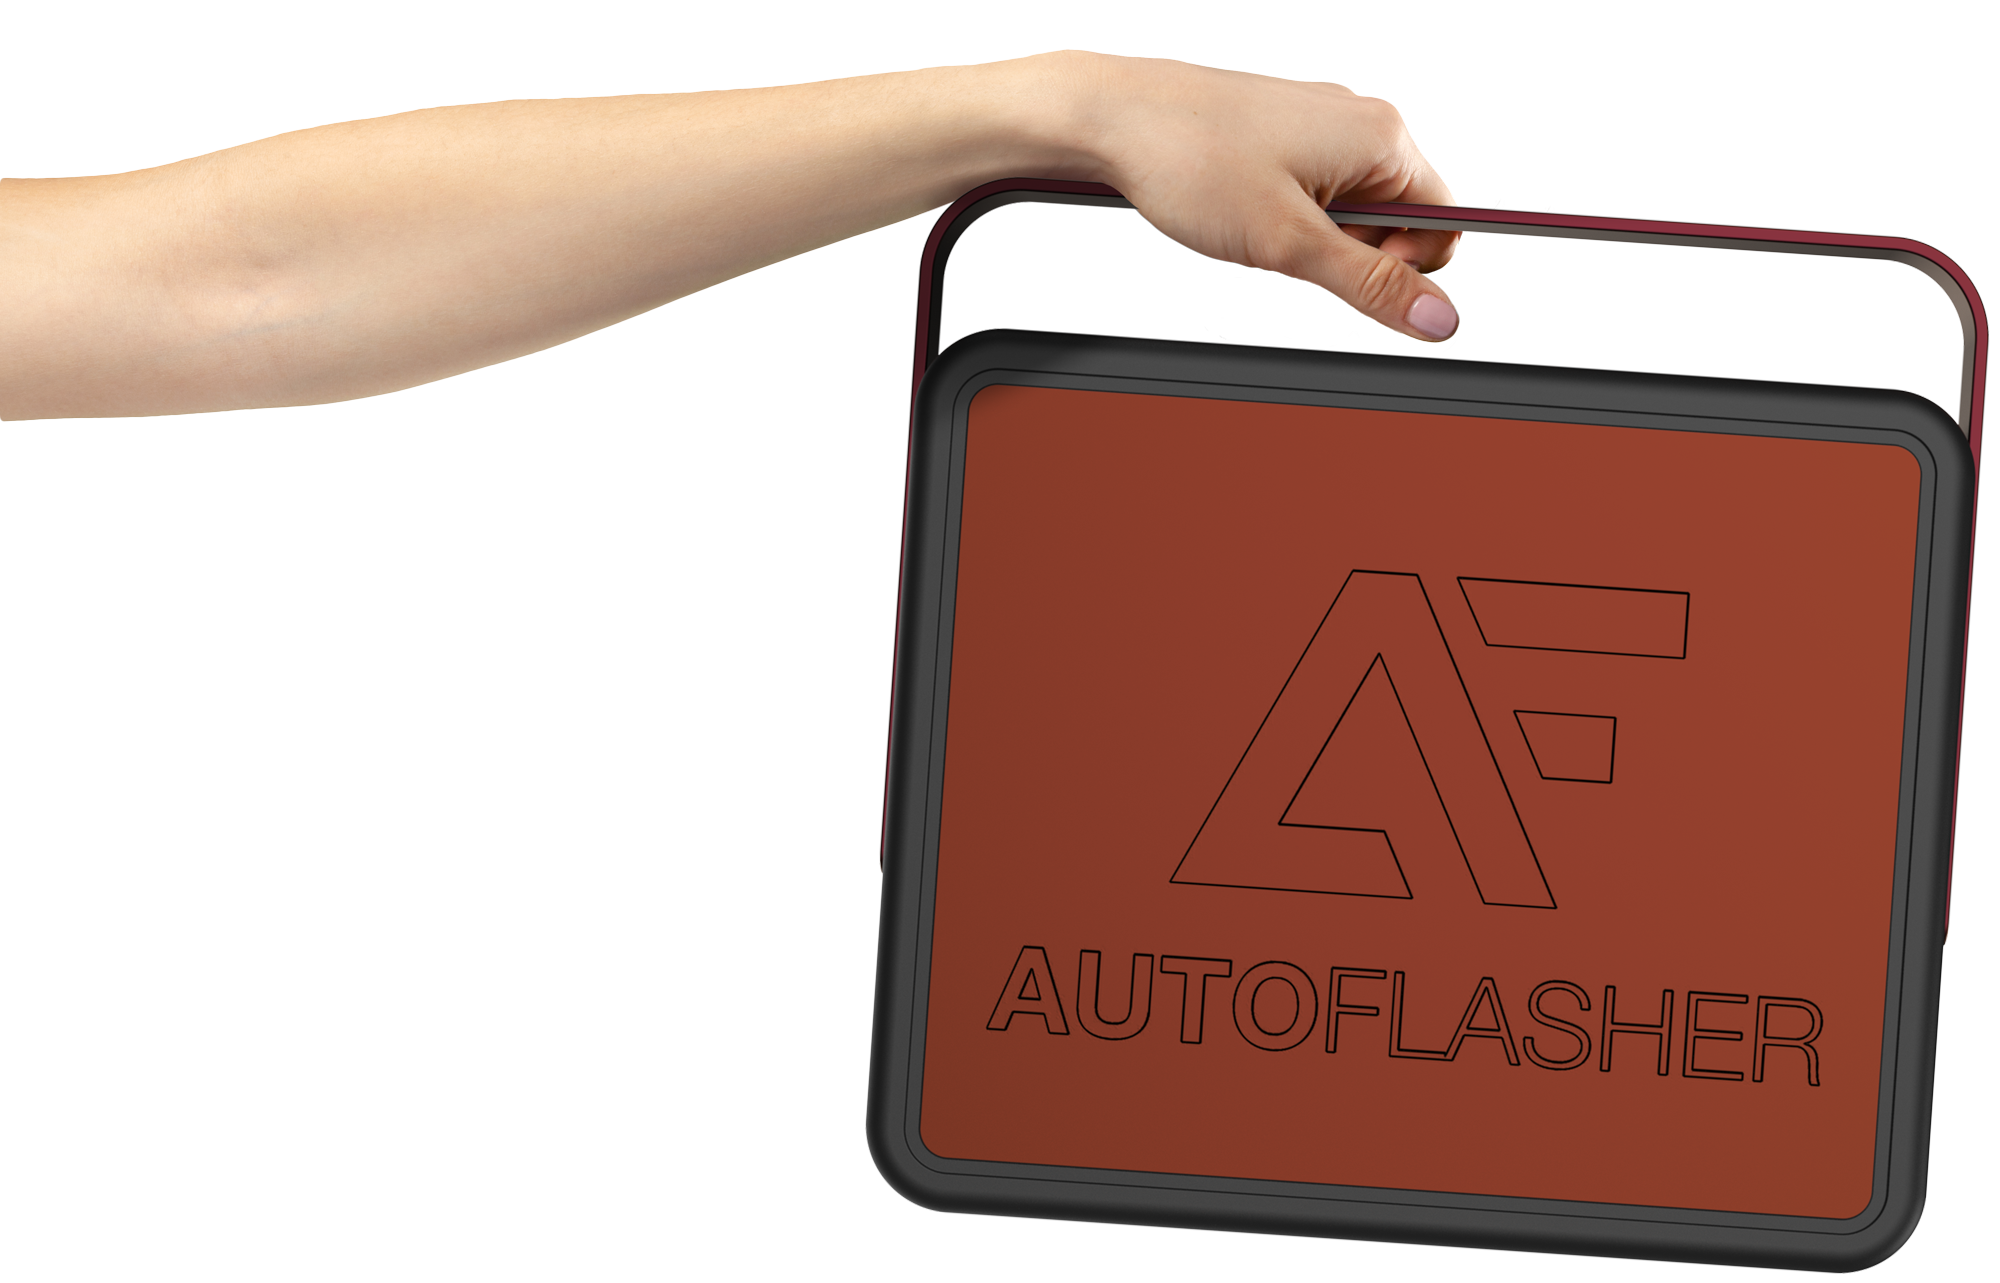 hand holding suitcase AutoFlasher